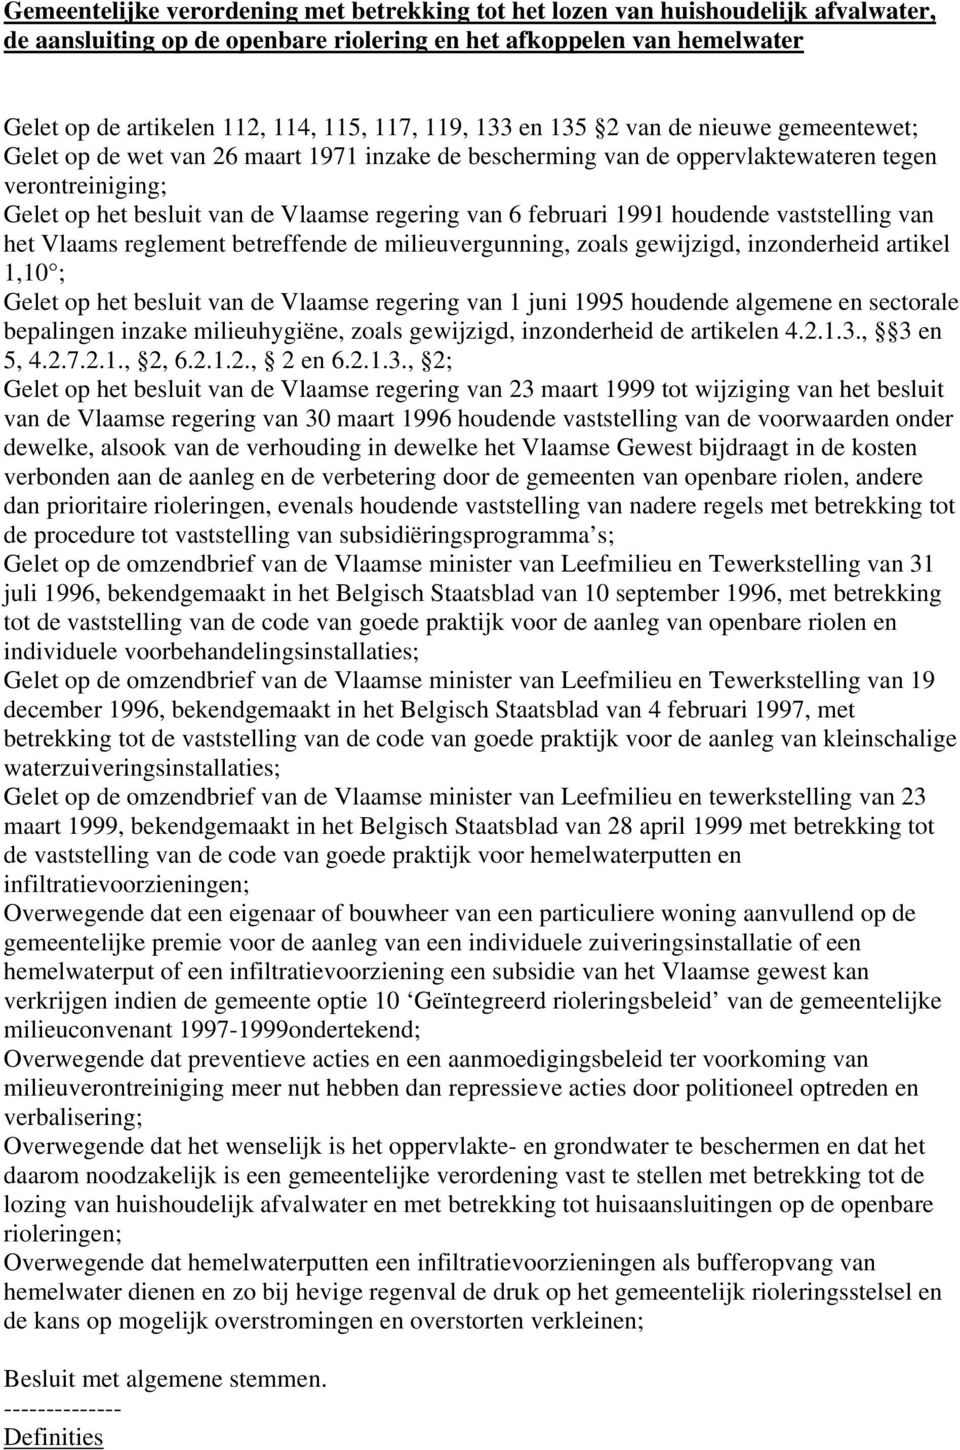 6 februari 1991 houdende vaststelling van het Vlaams reglement betreffende de milieuvergunning, zoals gewijzigd, inzonderheid artikel 1,10 ; Gelet op het besluit van de Vlaamse regering van 1 juni